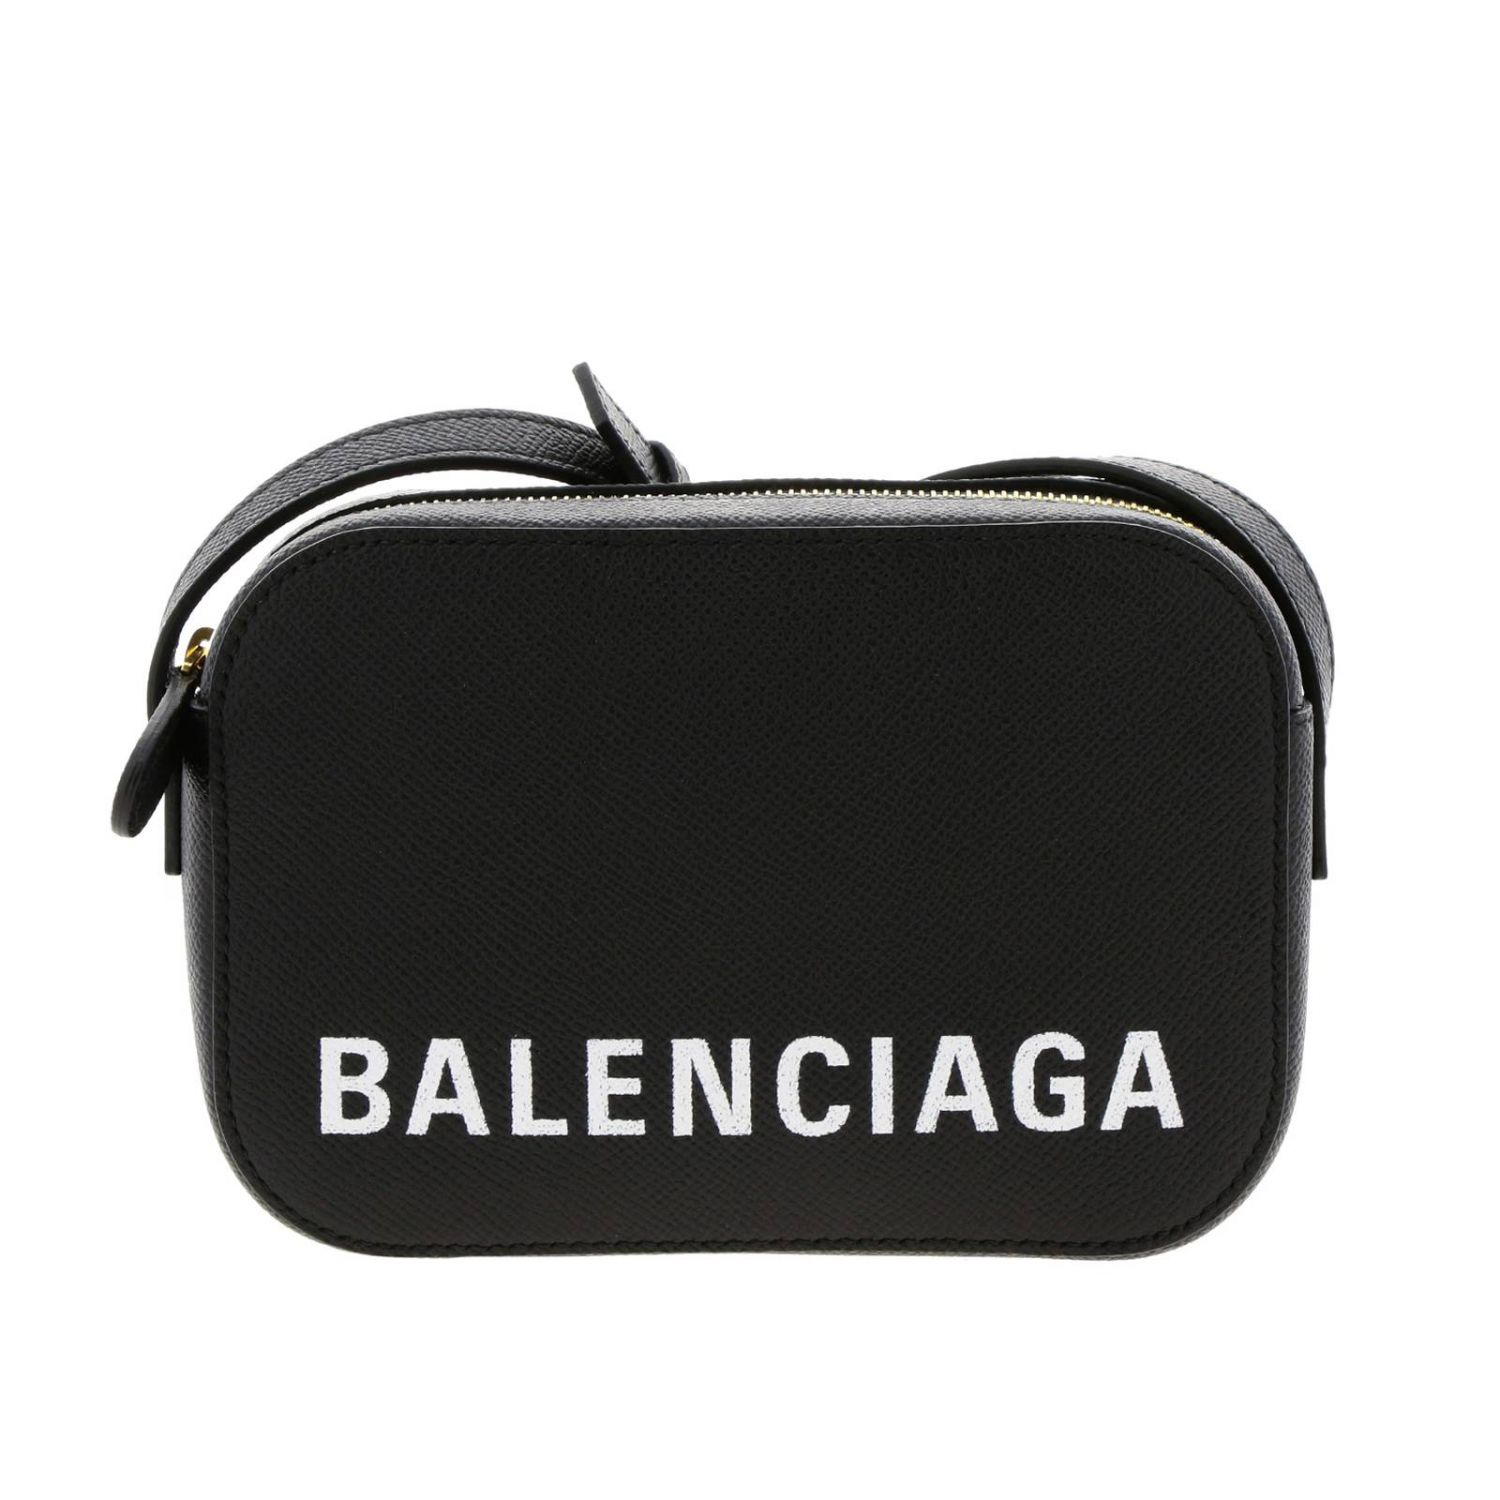 Balenciaga Outlet: Shoulder bag women - Black | Mini Bag Balenciaga ...